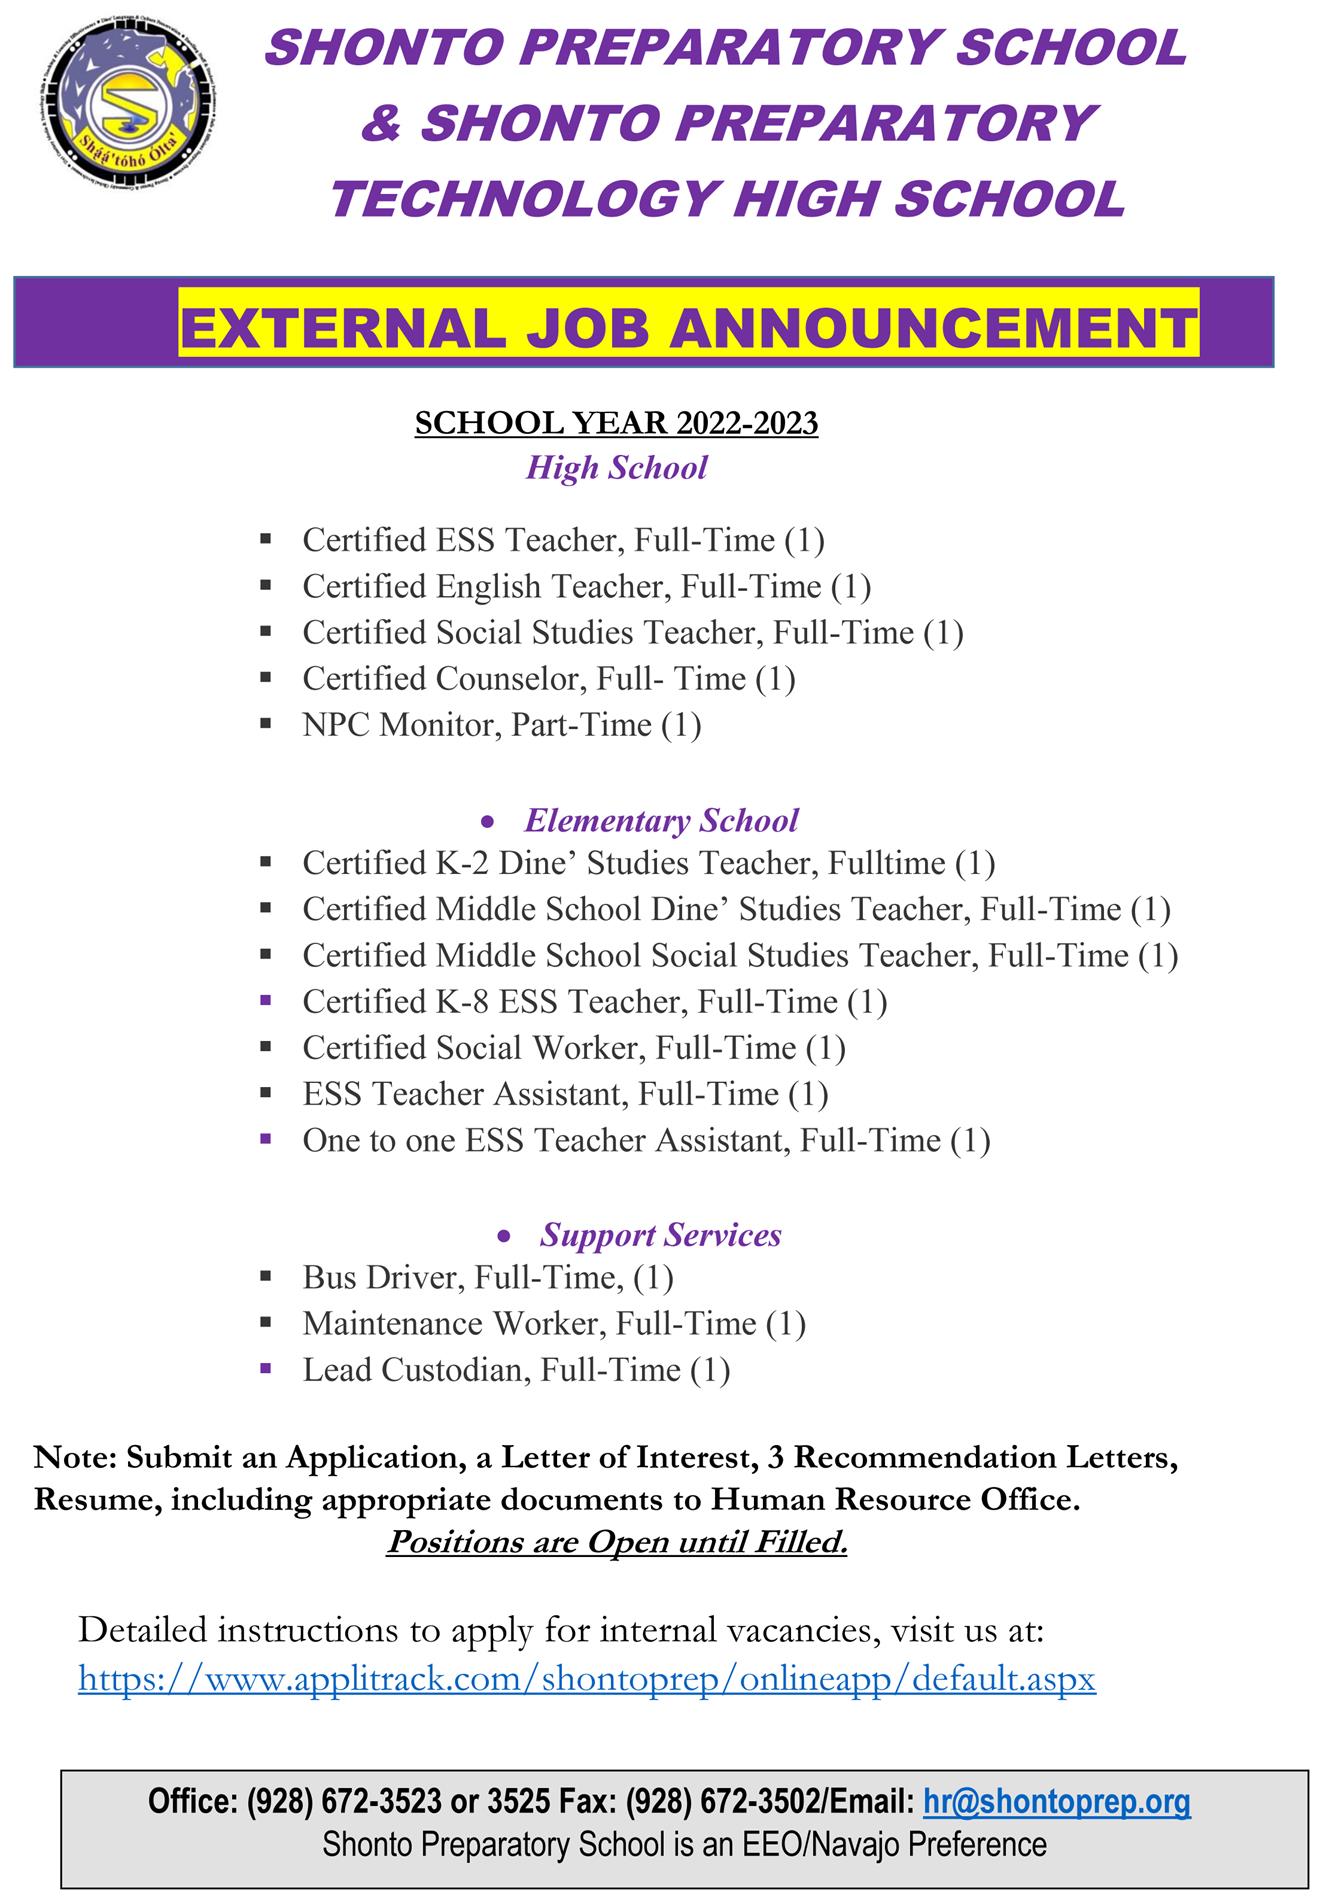 05.04.22 External Job Announcement